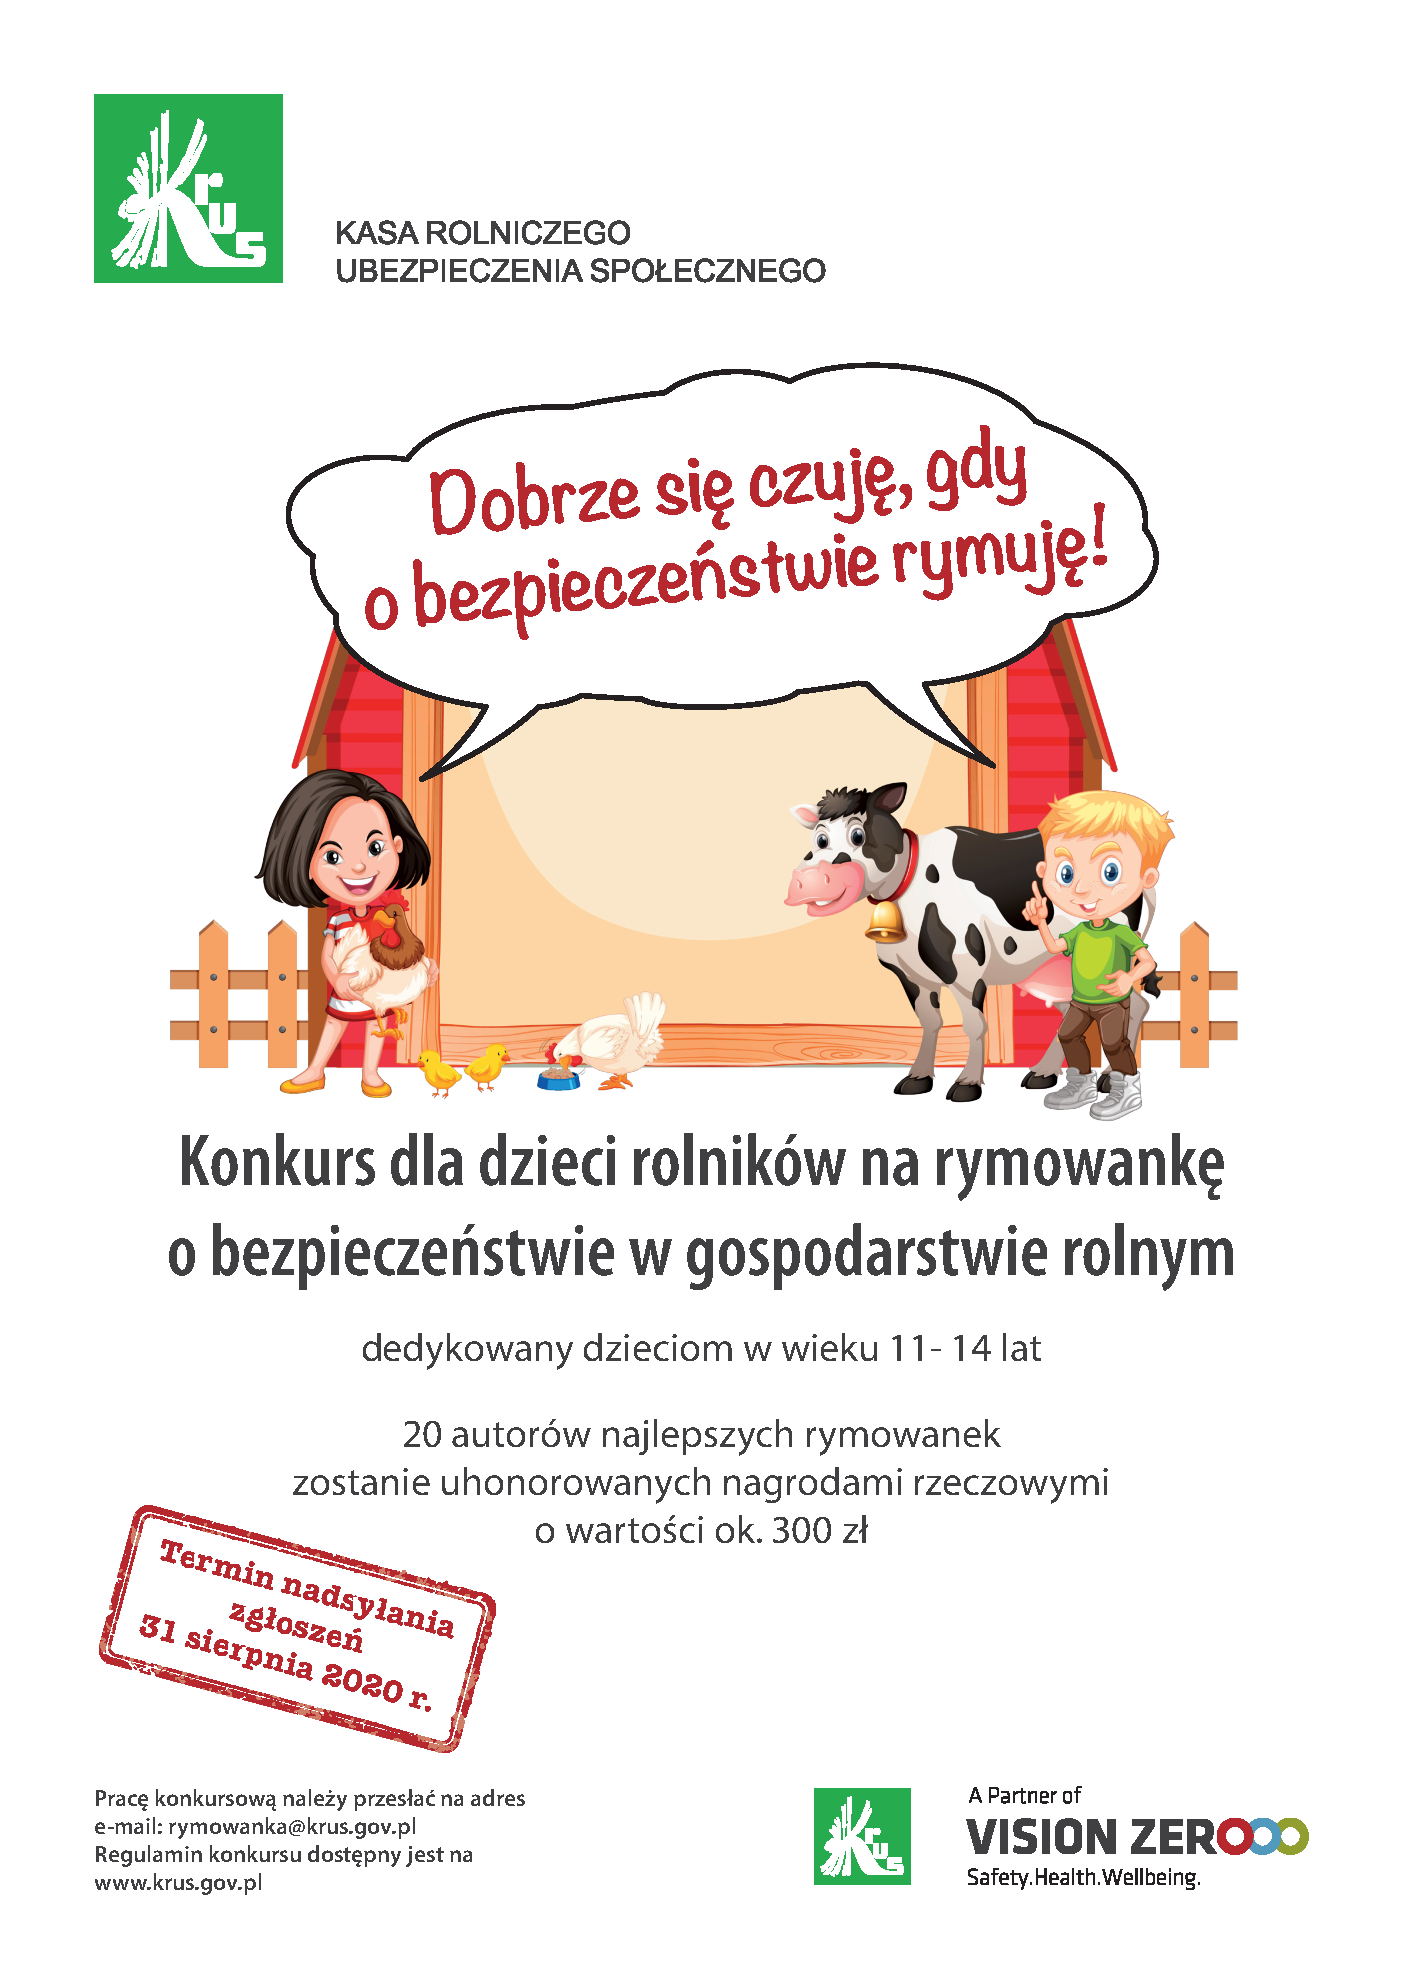 Konkurs dla dzieci rolników na rymowankę o bezpieczeństwie w gosp. rolnym